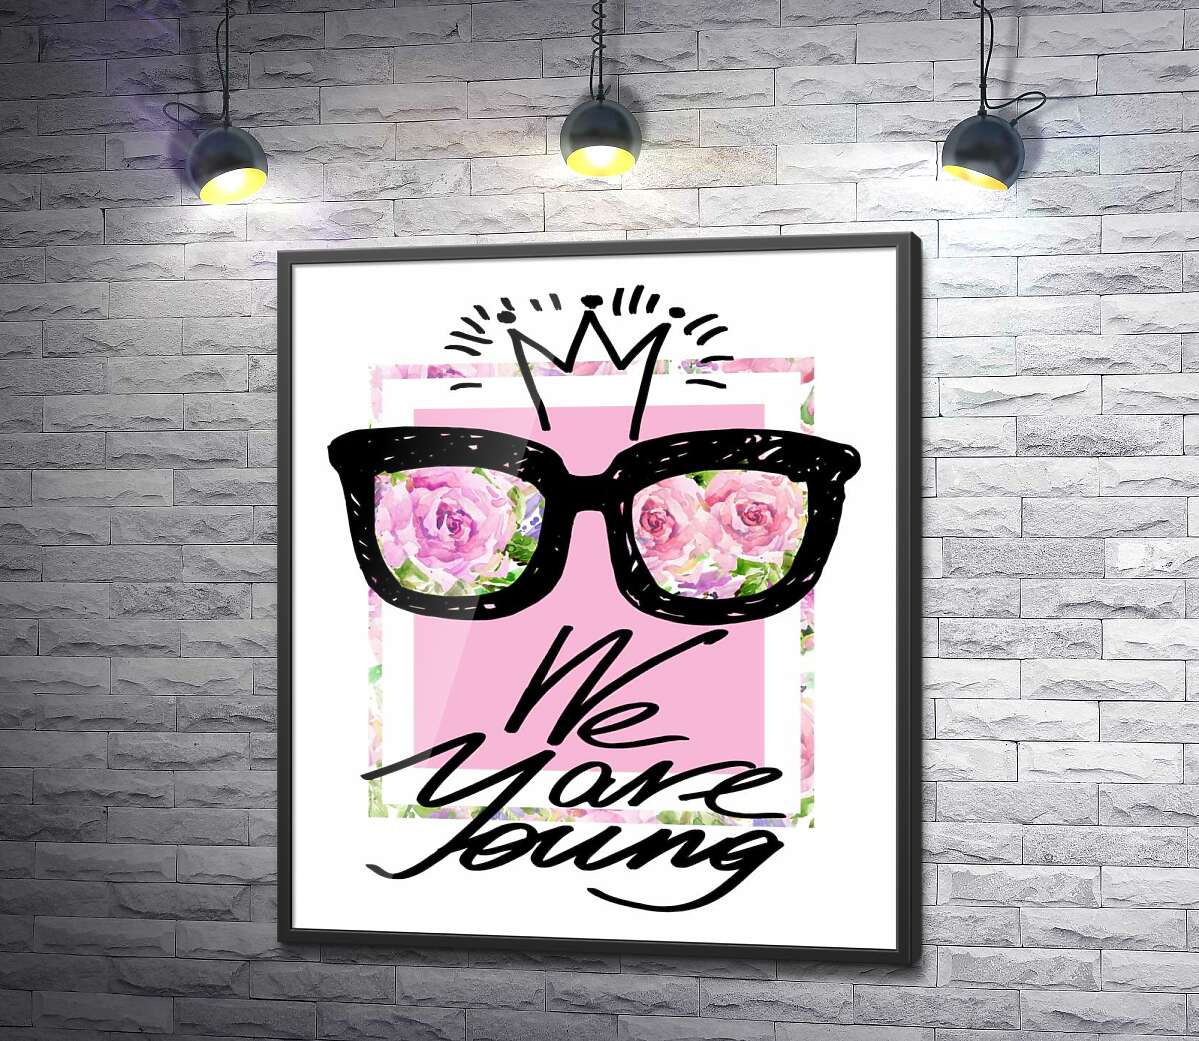 постер Черные очки с короной над надписью "we are young"